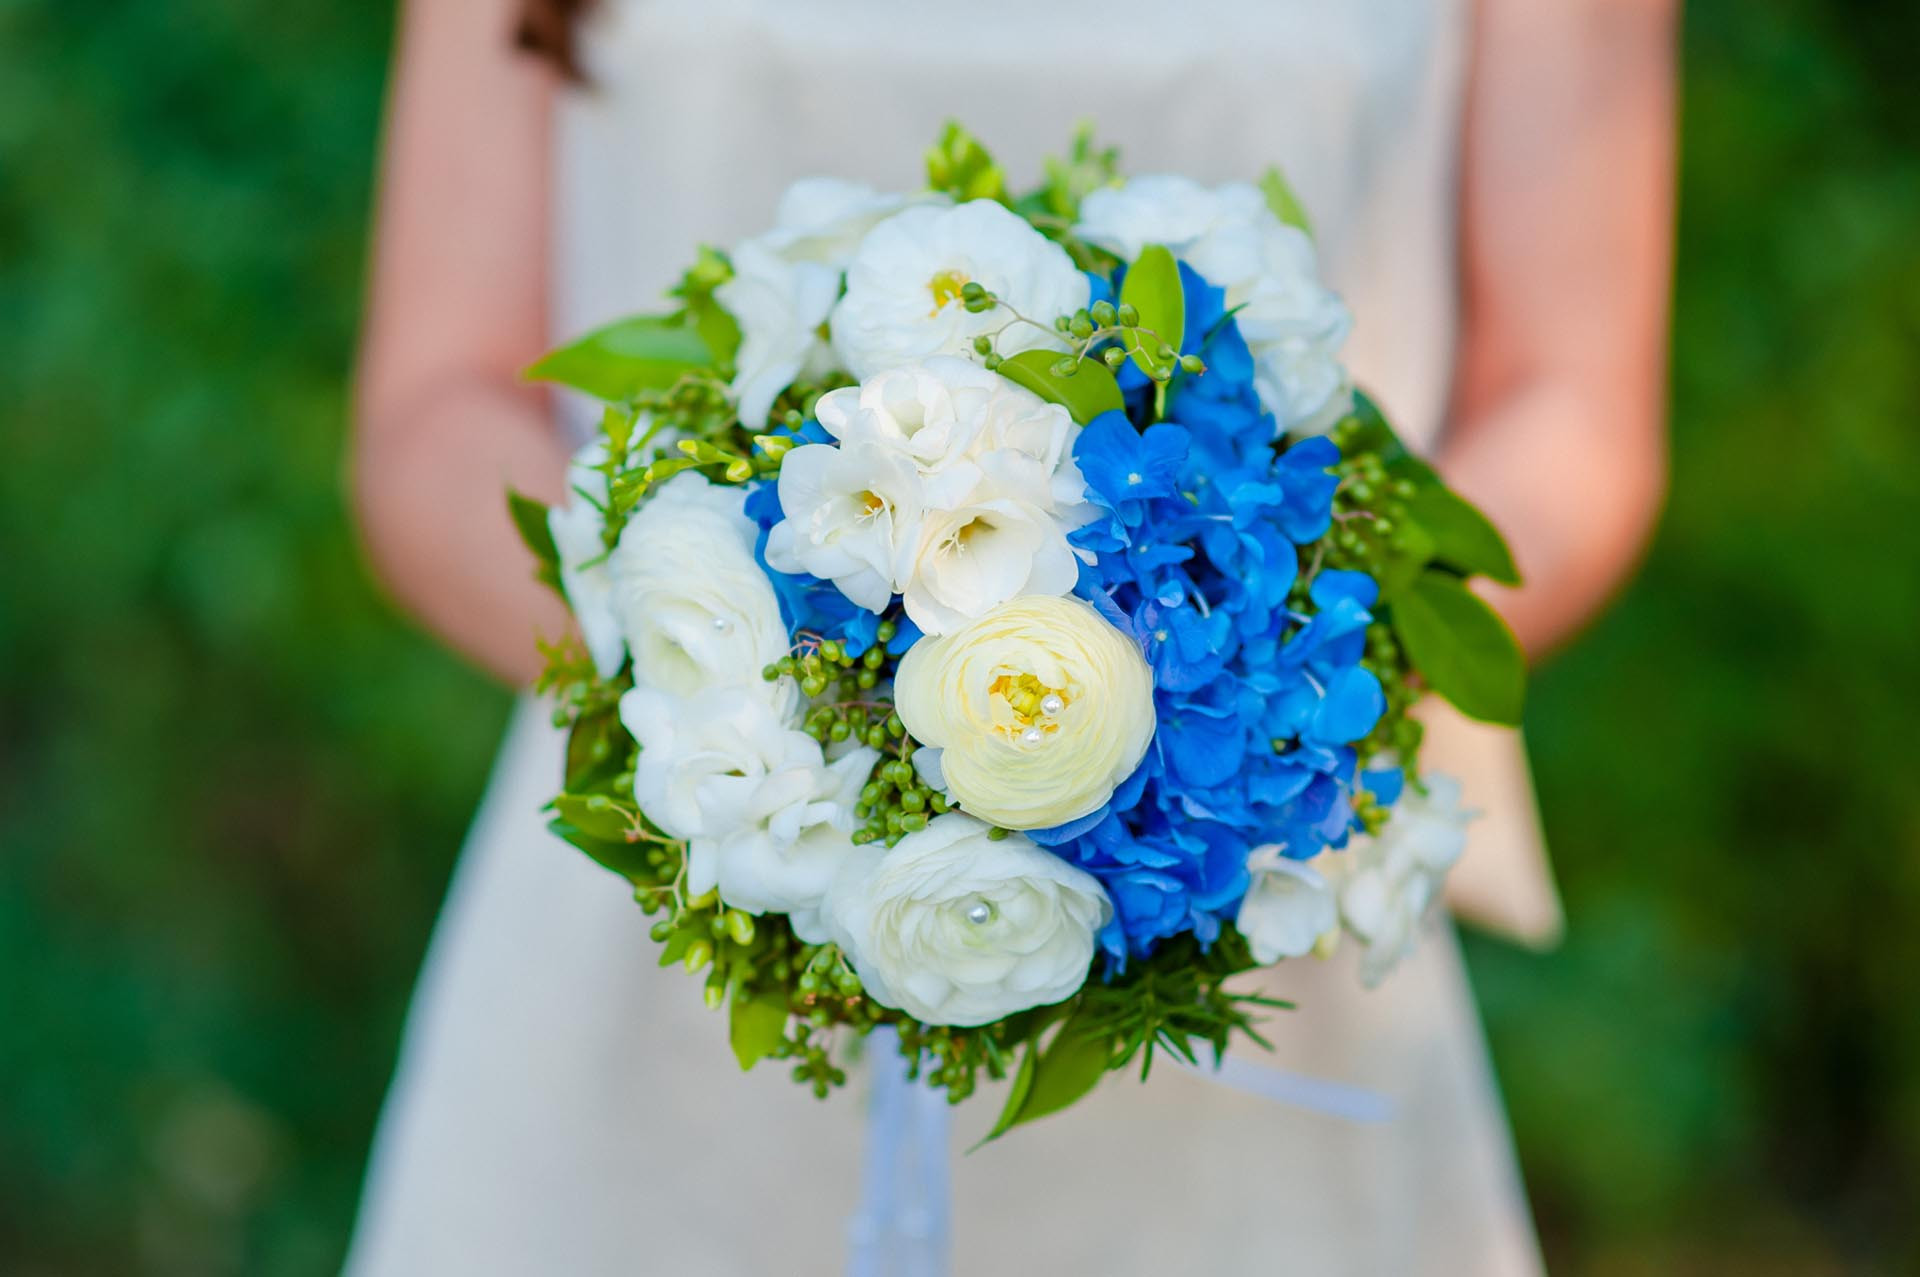 Brautstrauß Blau Weiß
 Brautstrauß in Blau und Weiß Heiraten mit braut